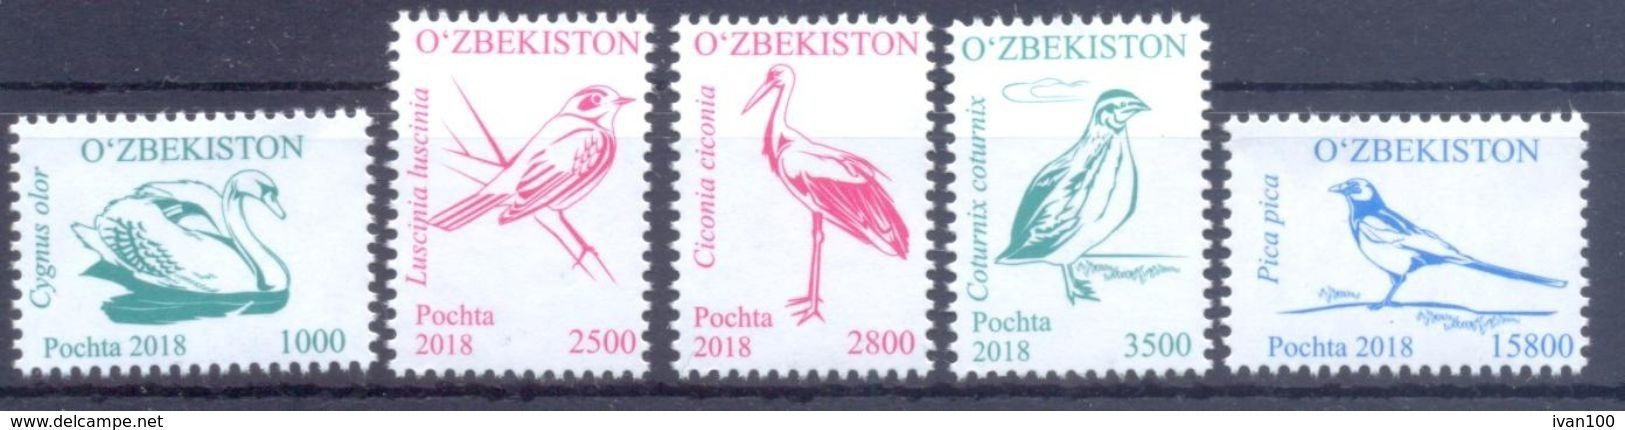 2018. Uzbekistan, Definitives, Birds, Issue III, 5v, Mint/** - Ouzbékistan